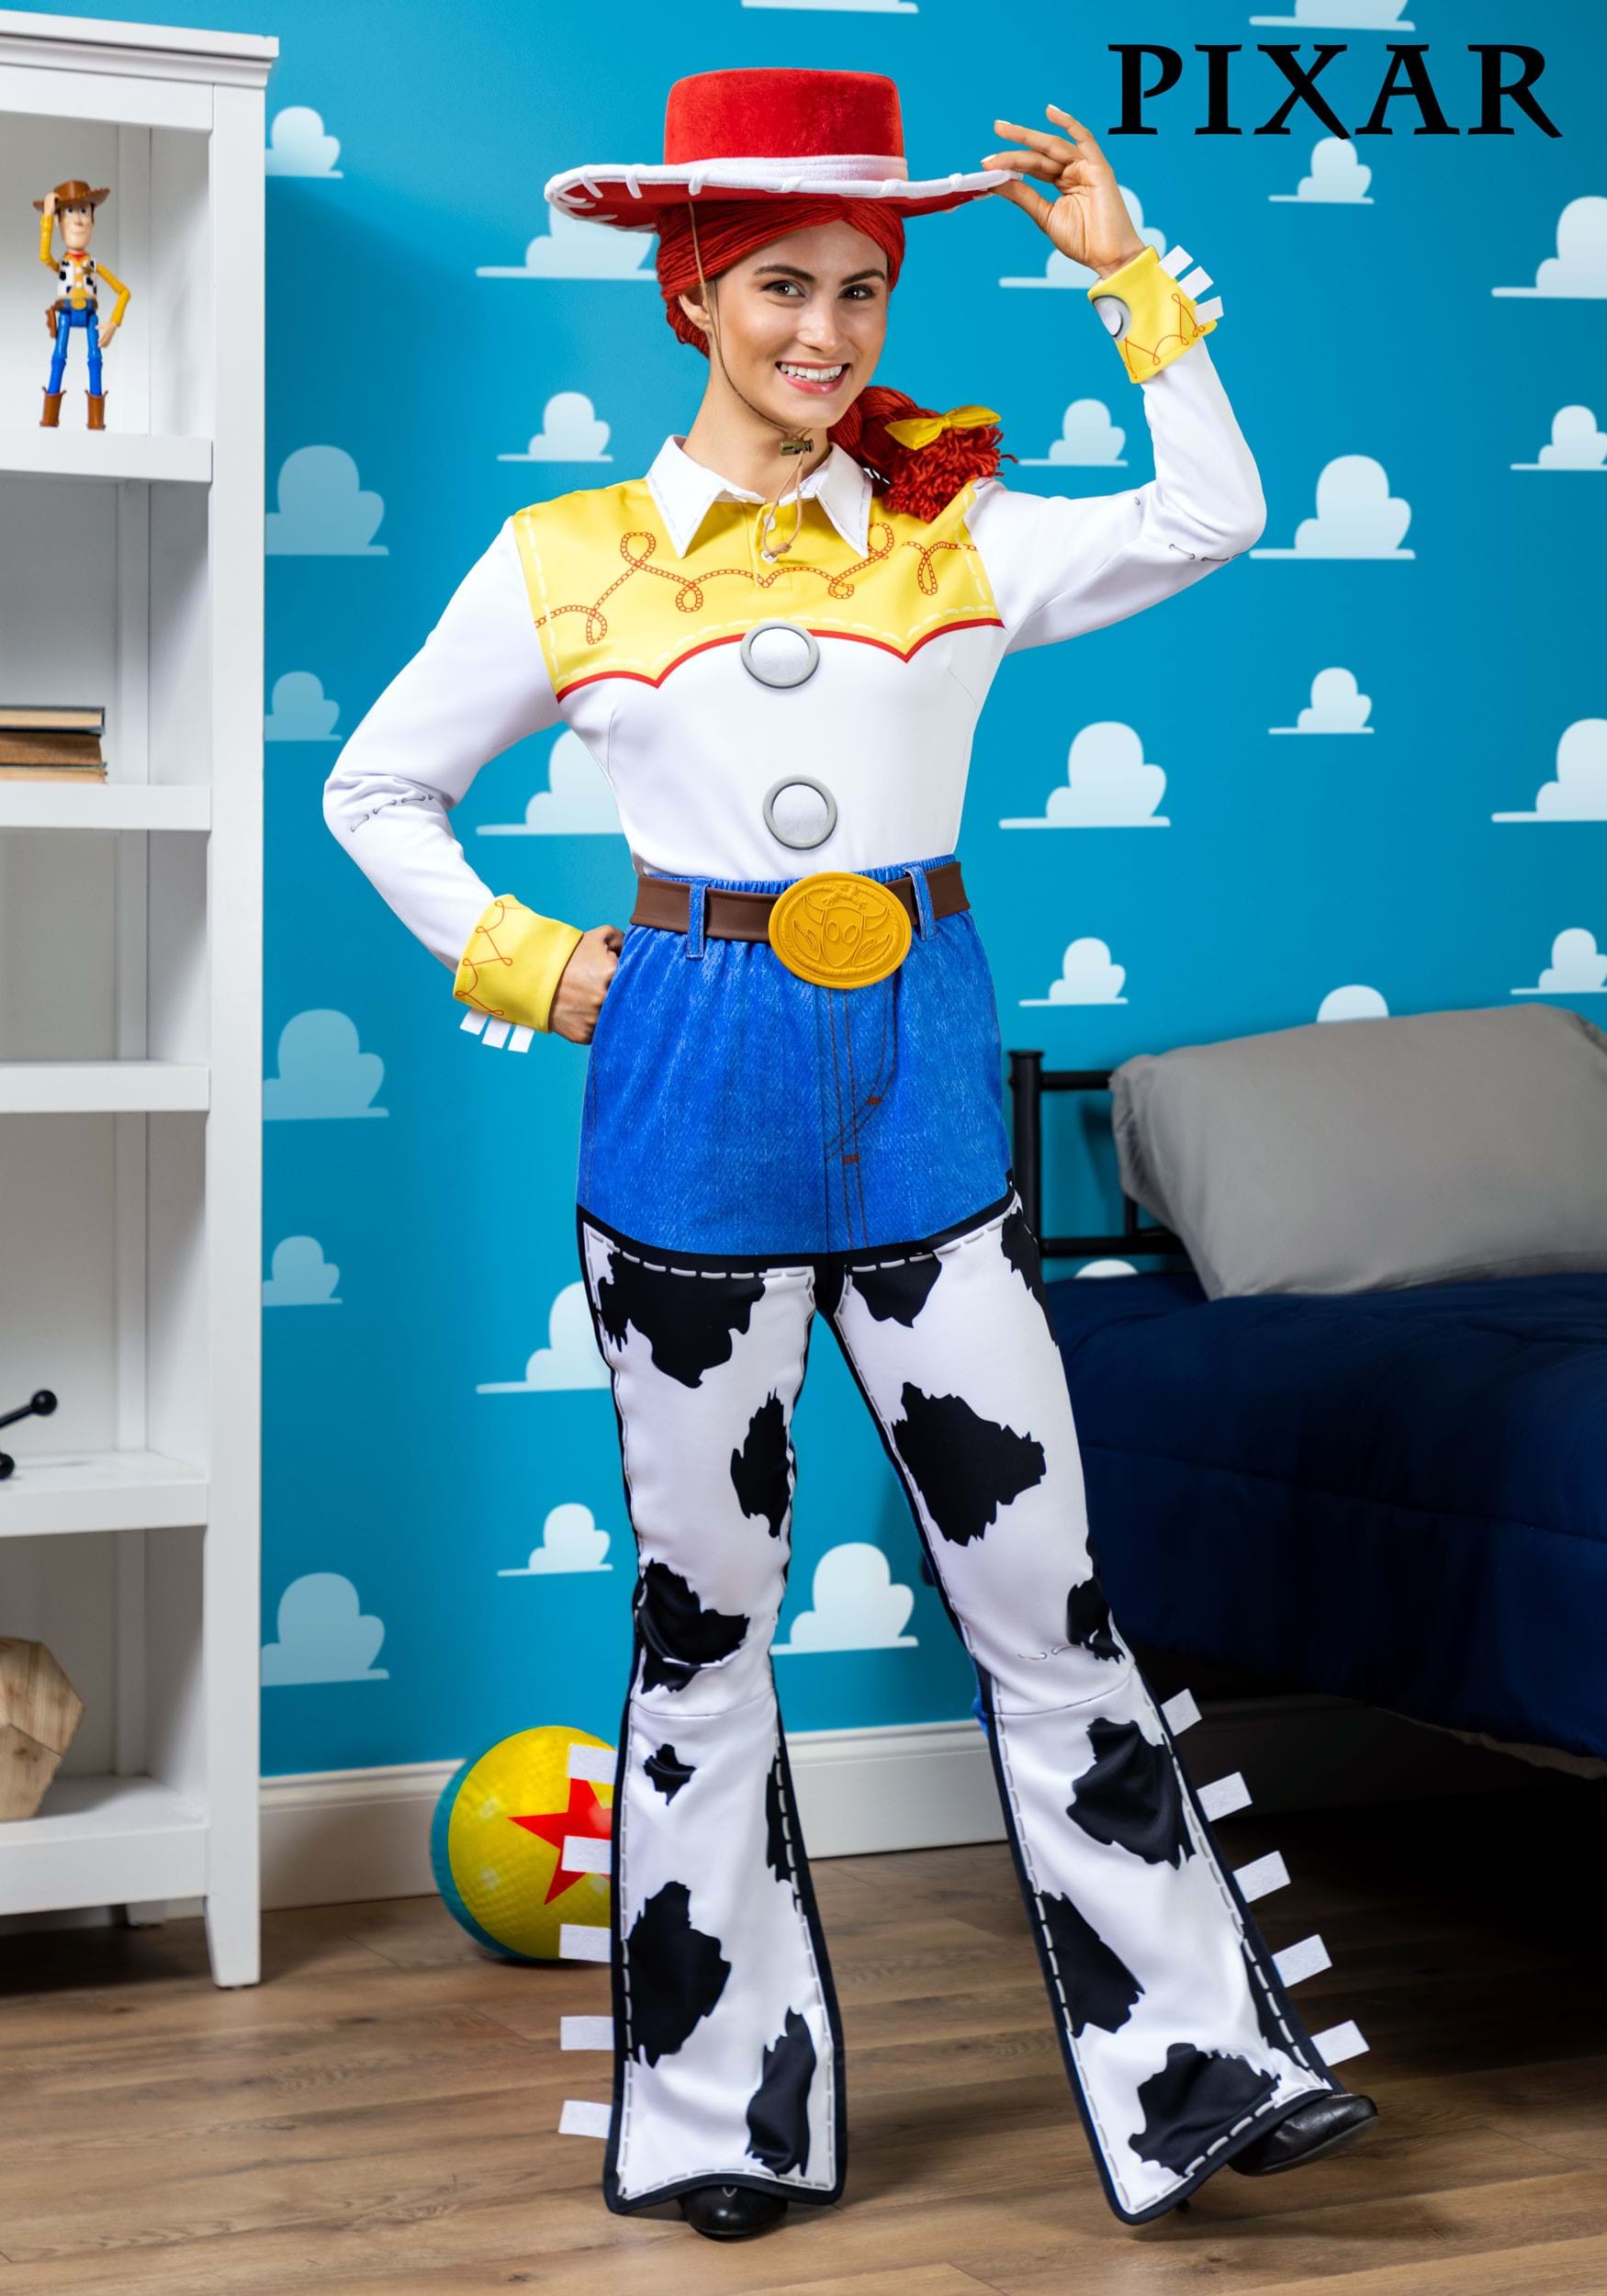 Jessie cosplay adult costume , Toy Story, Woody, Buzz Lightyear, cowgirl,  fancy dress, …